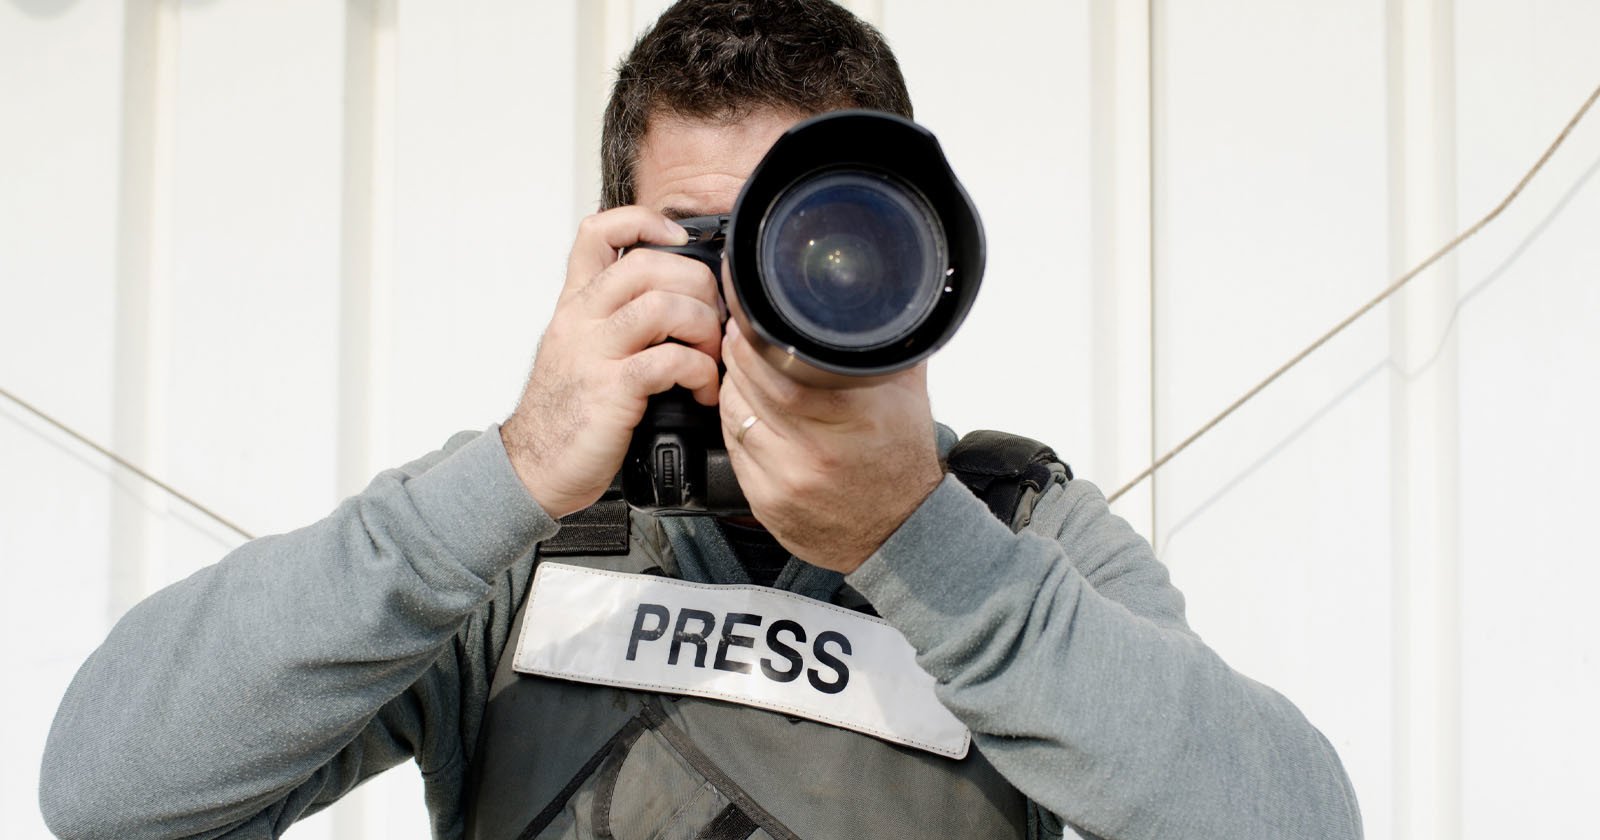  nikon leica are leading defense photojournalism 